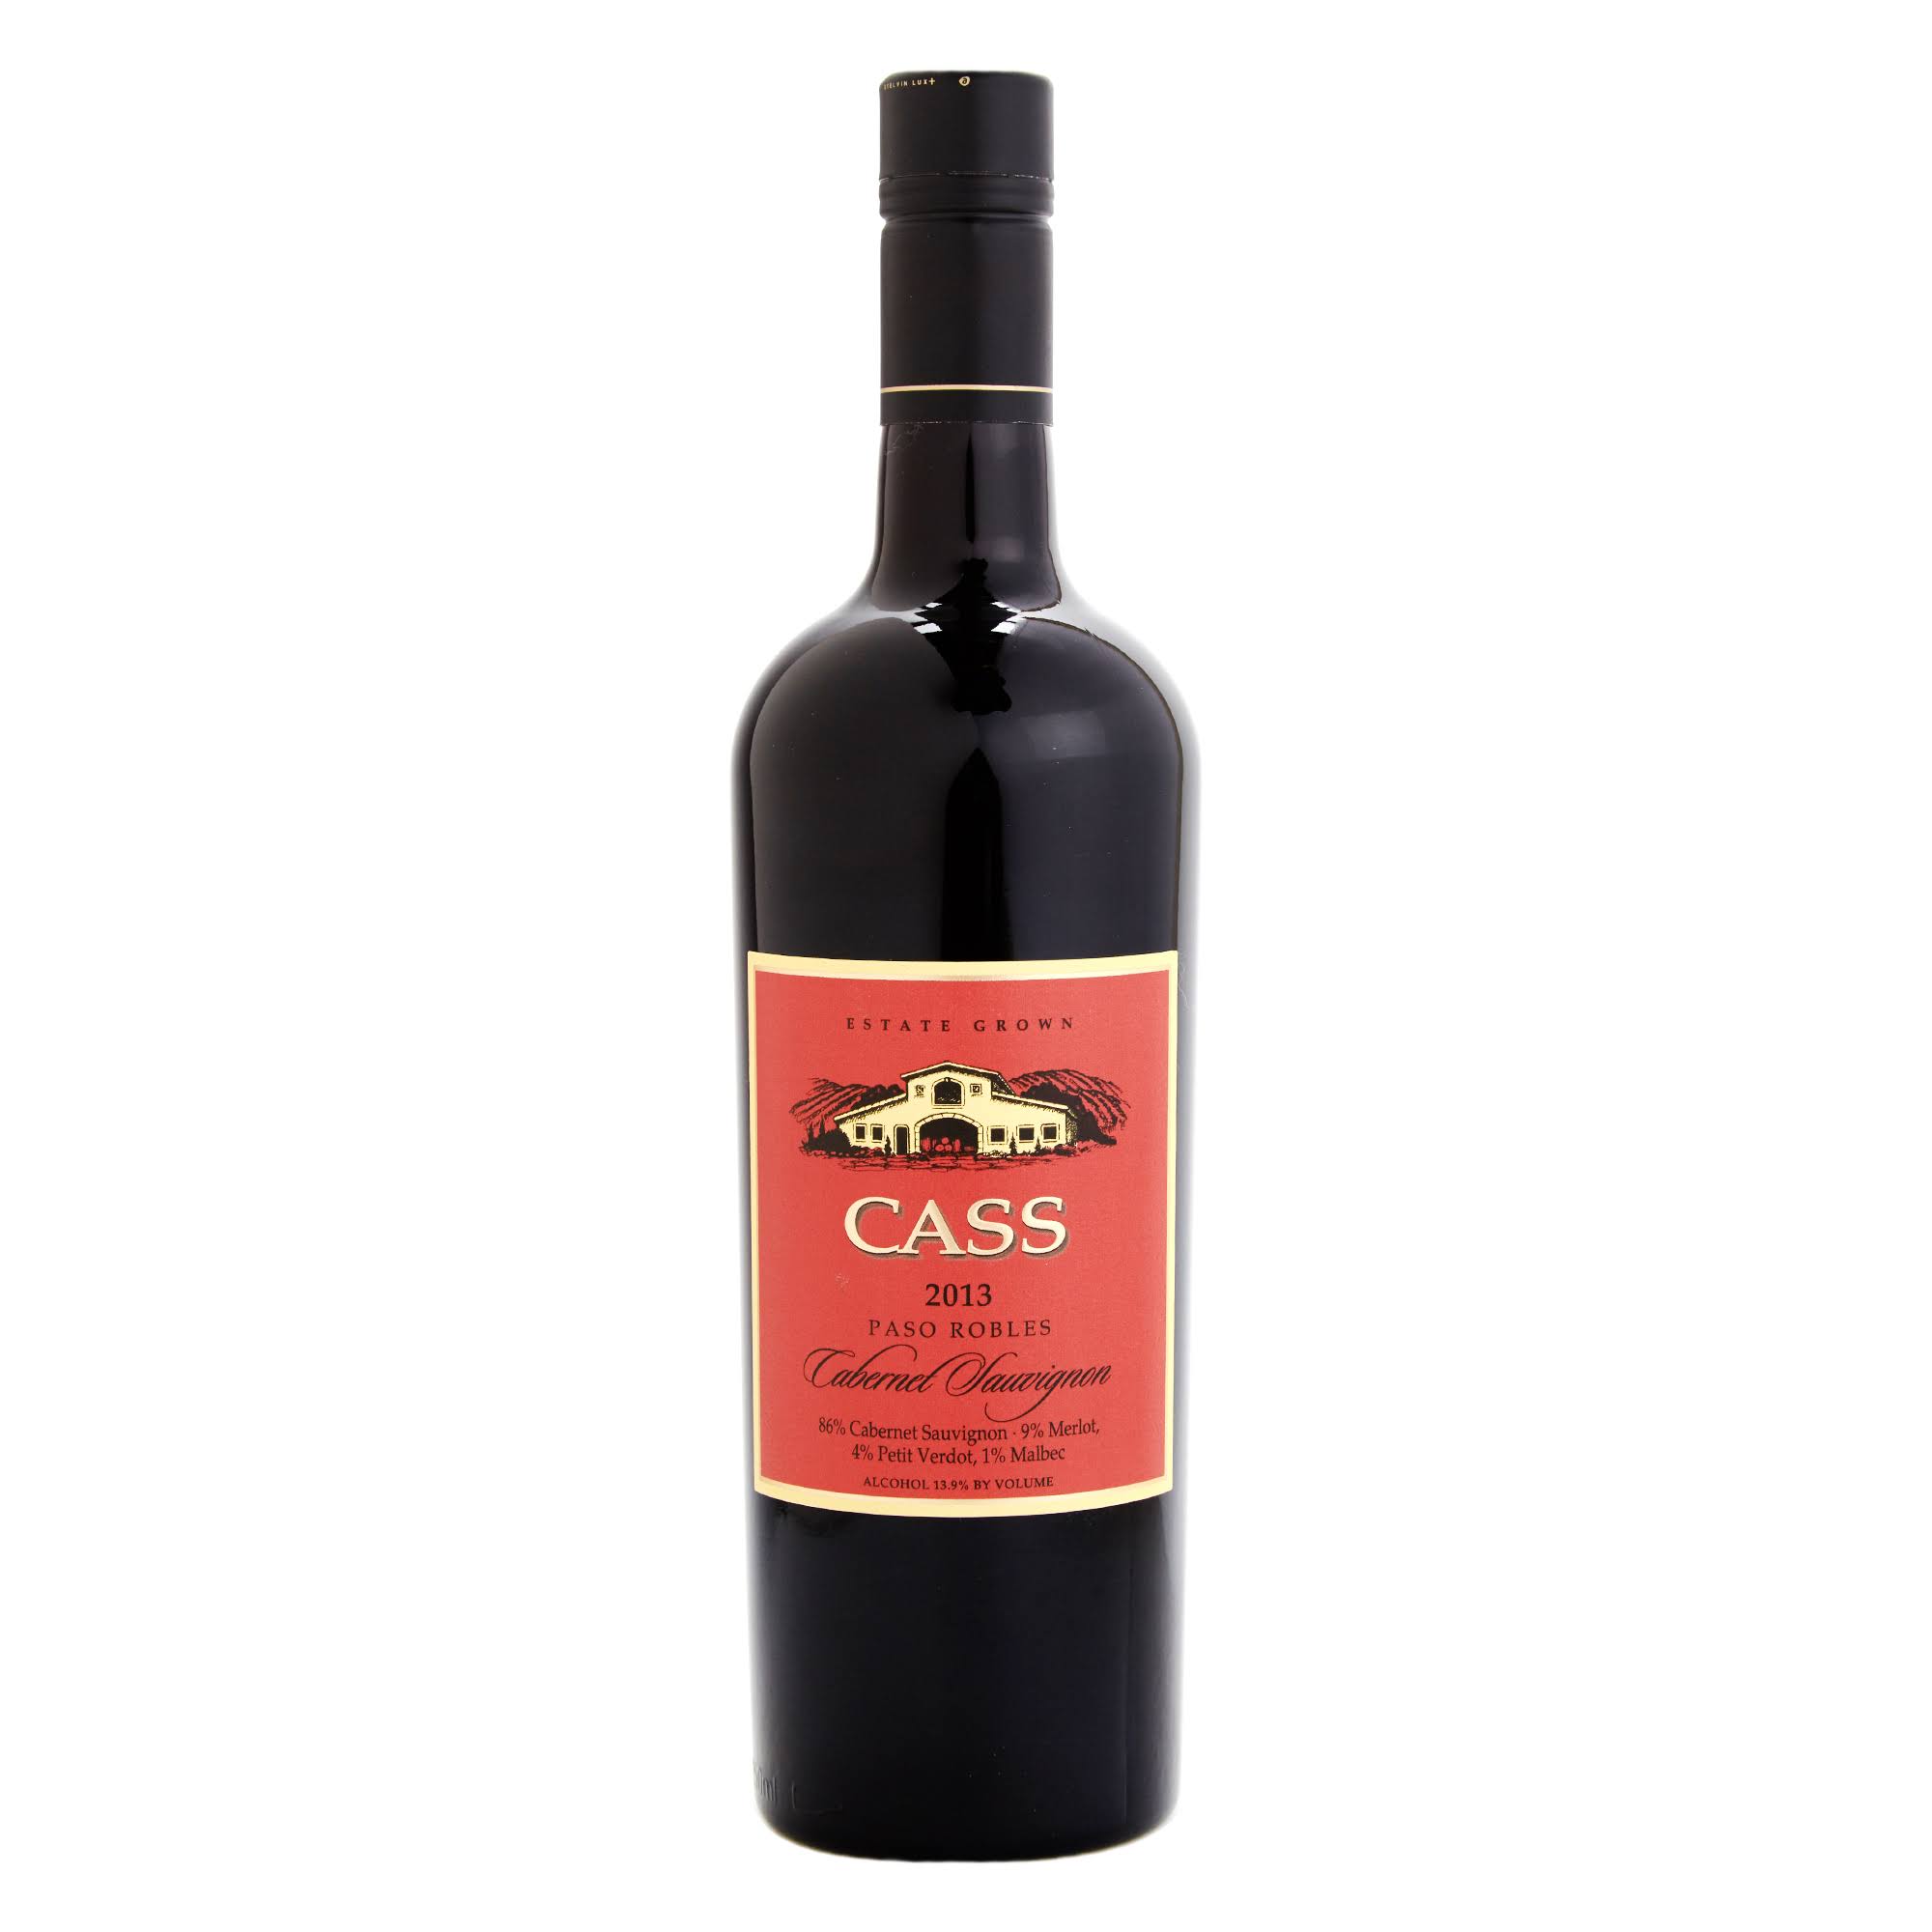 Cass Cabernet Sauvignon, Paso Robles, 2014 - 750 ml